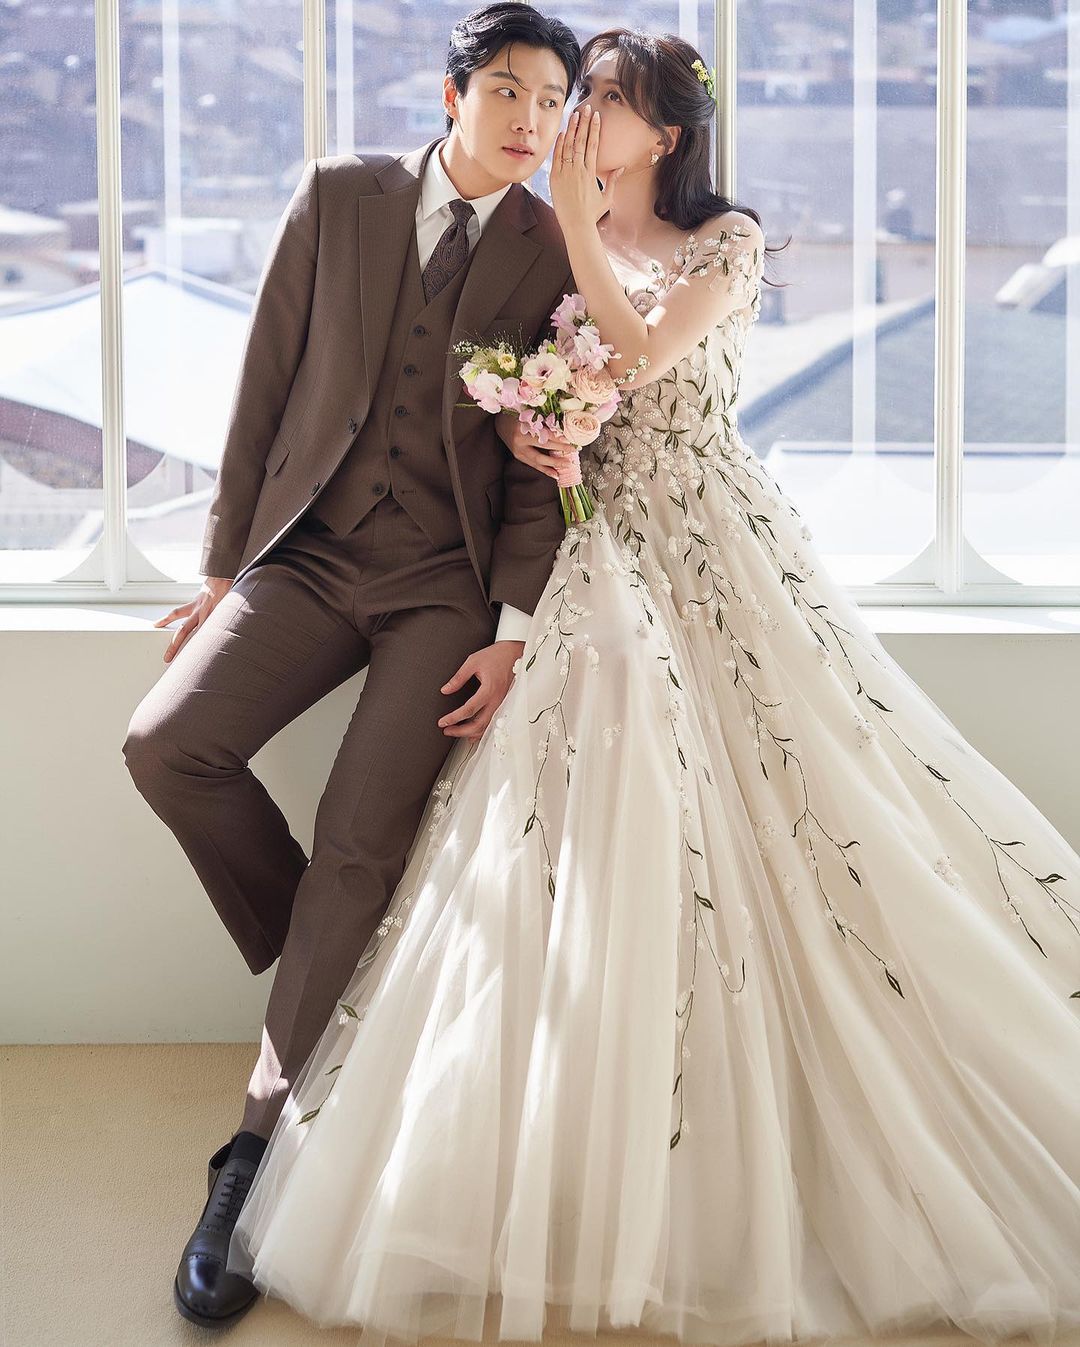 Showbiz Hàn được mùa cưới: Sau Hyun Bin và Son Ye Jin, có cặp đôi idol chốt đơn về chung nhà chỉ sau 1 năm hẹn hò - Ảnh 2.